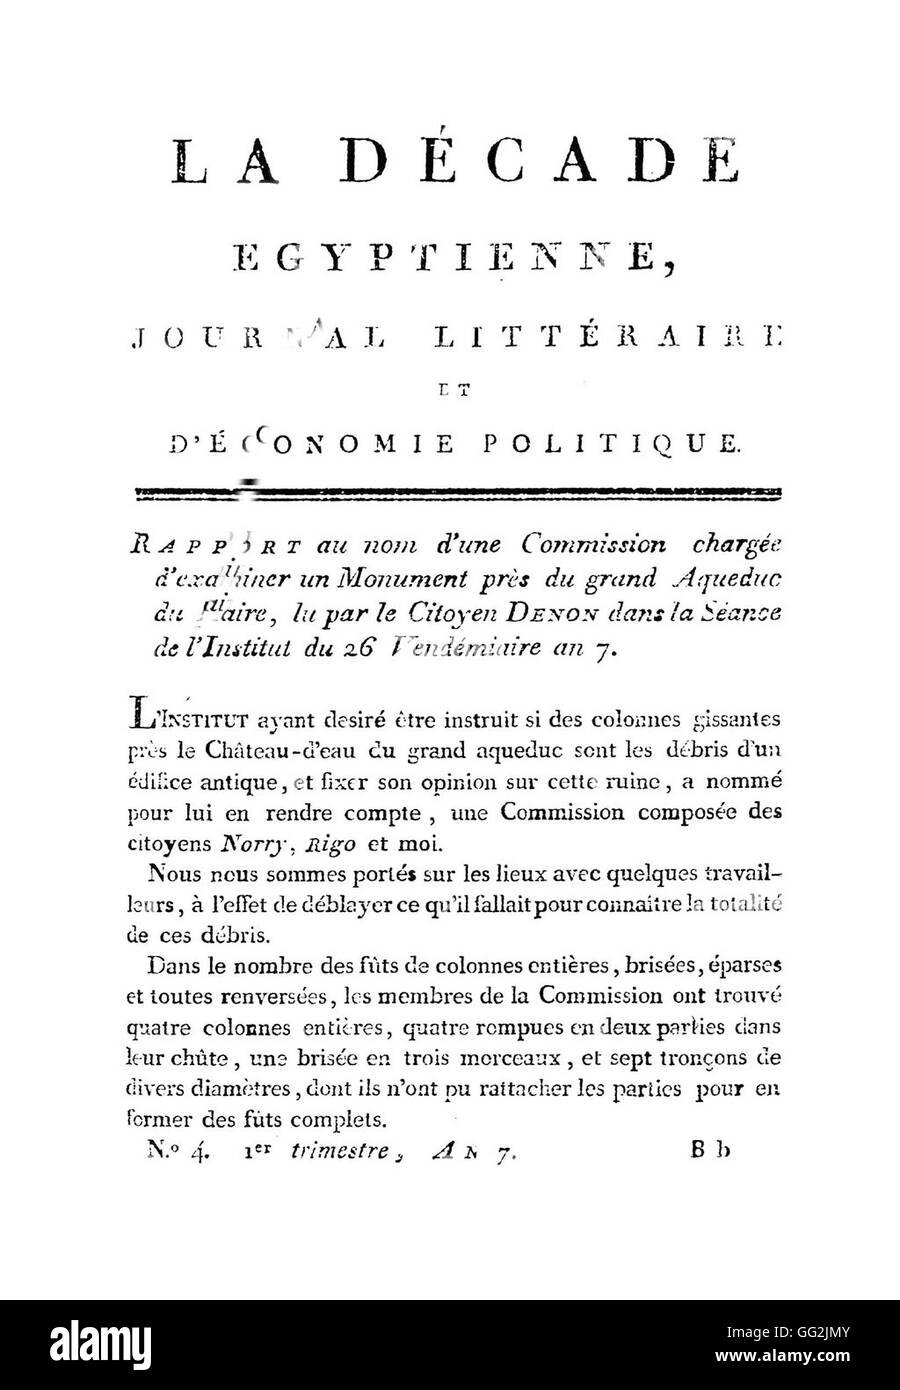 La Décade Egyptienne. Literary Journal about economic policy. N°4.  Le Caire, Imprimerie Nationale, premier trimestre An VII (1798-1799). Stock Photo